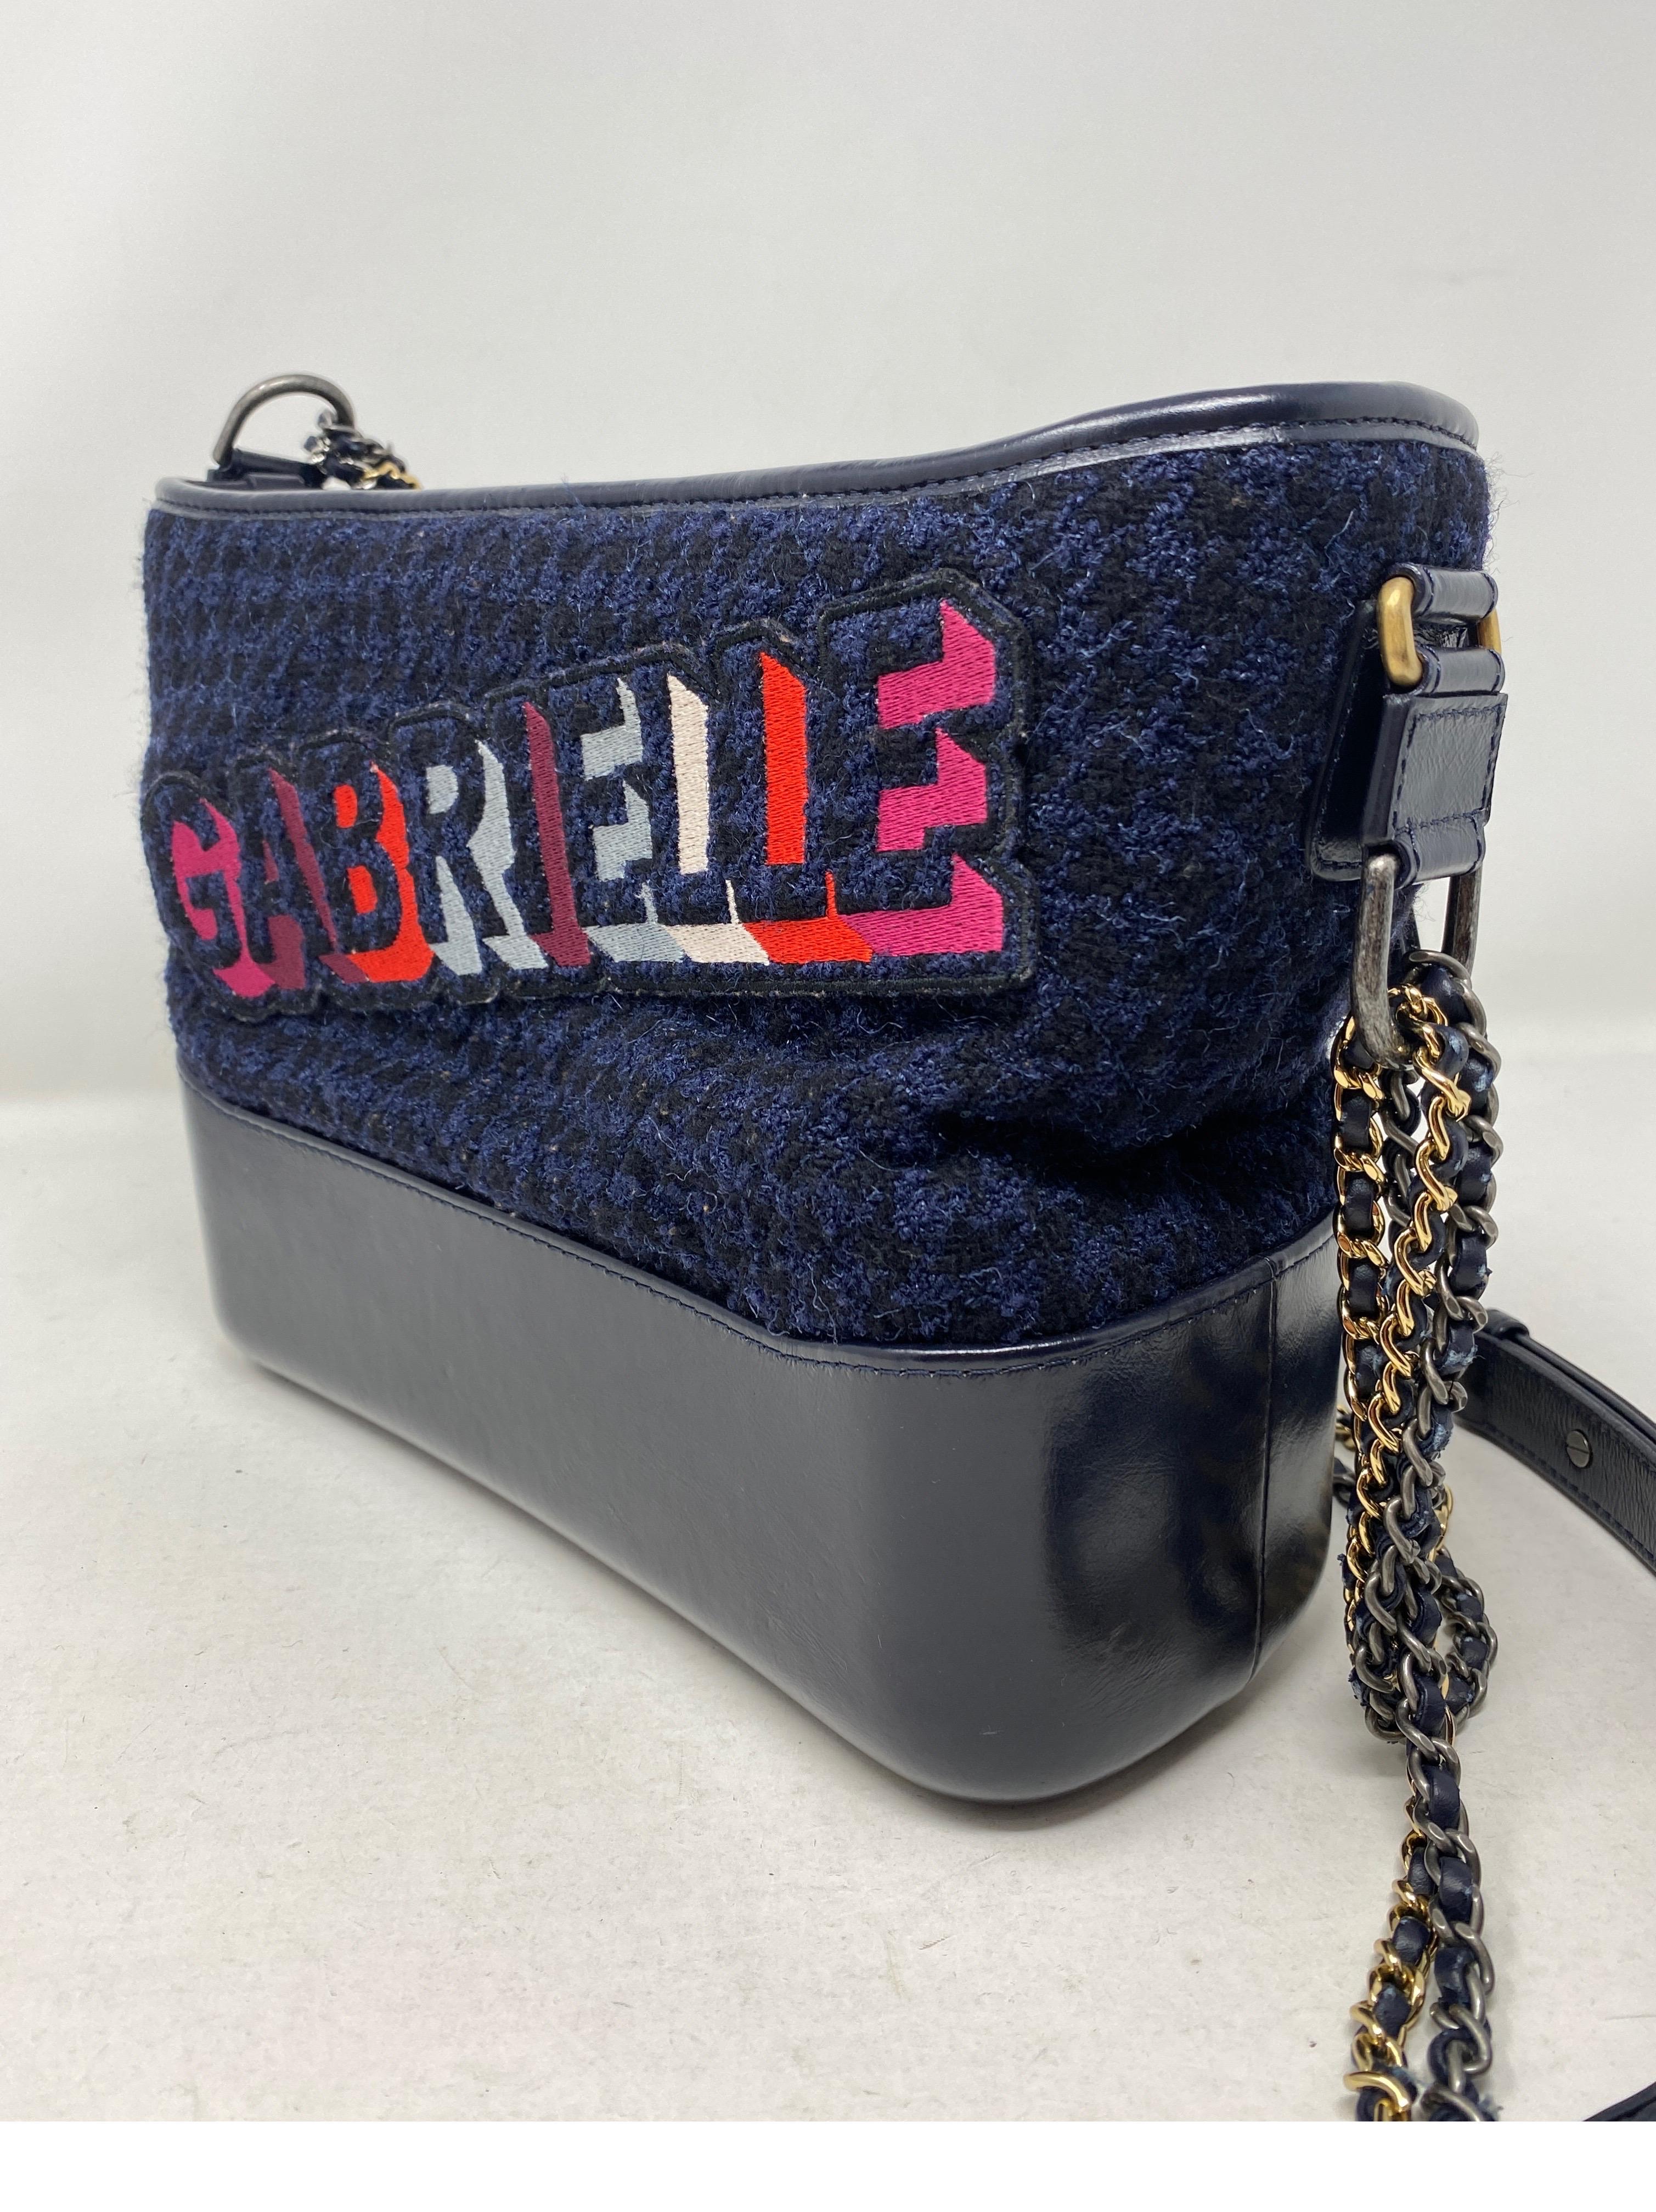 Chanel Gabrielle Bag  10